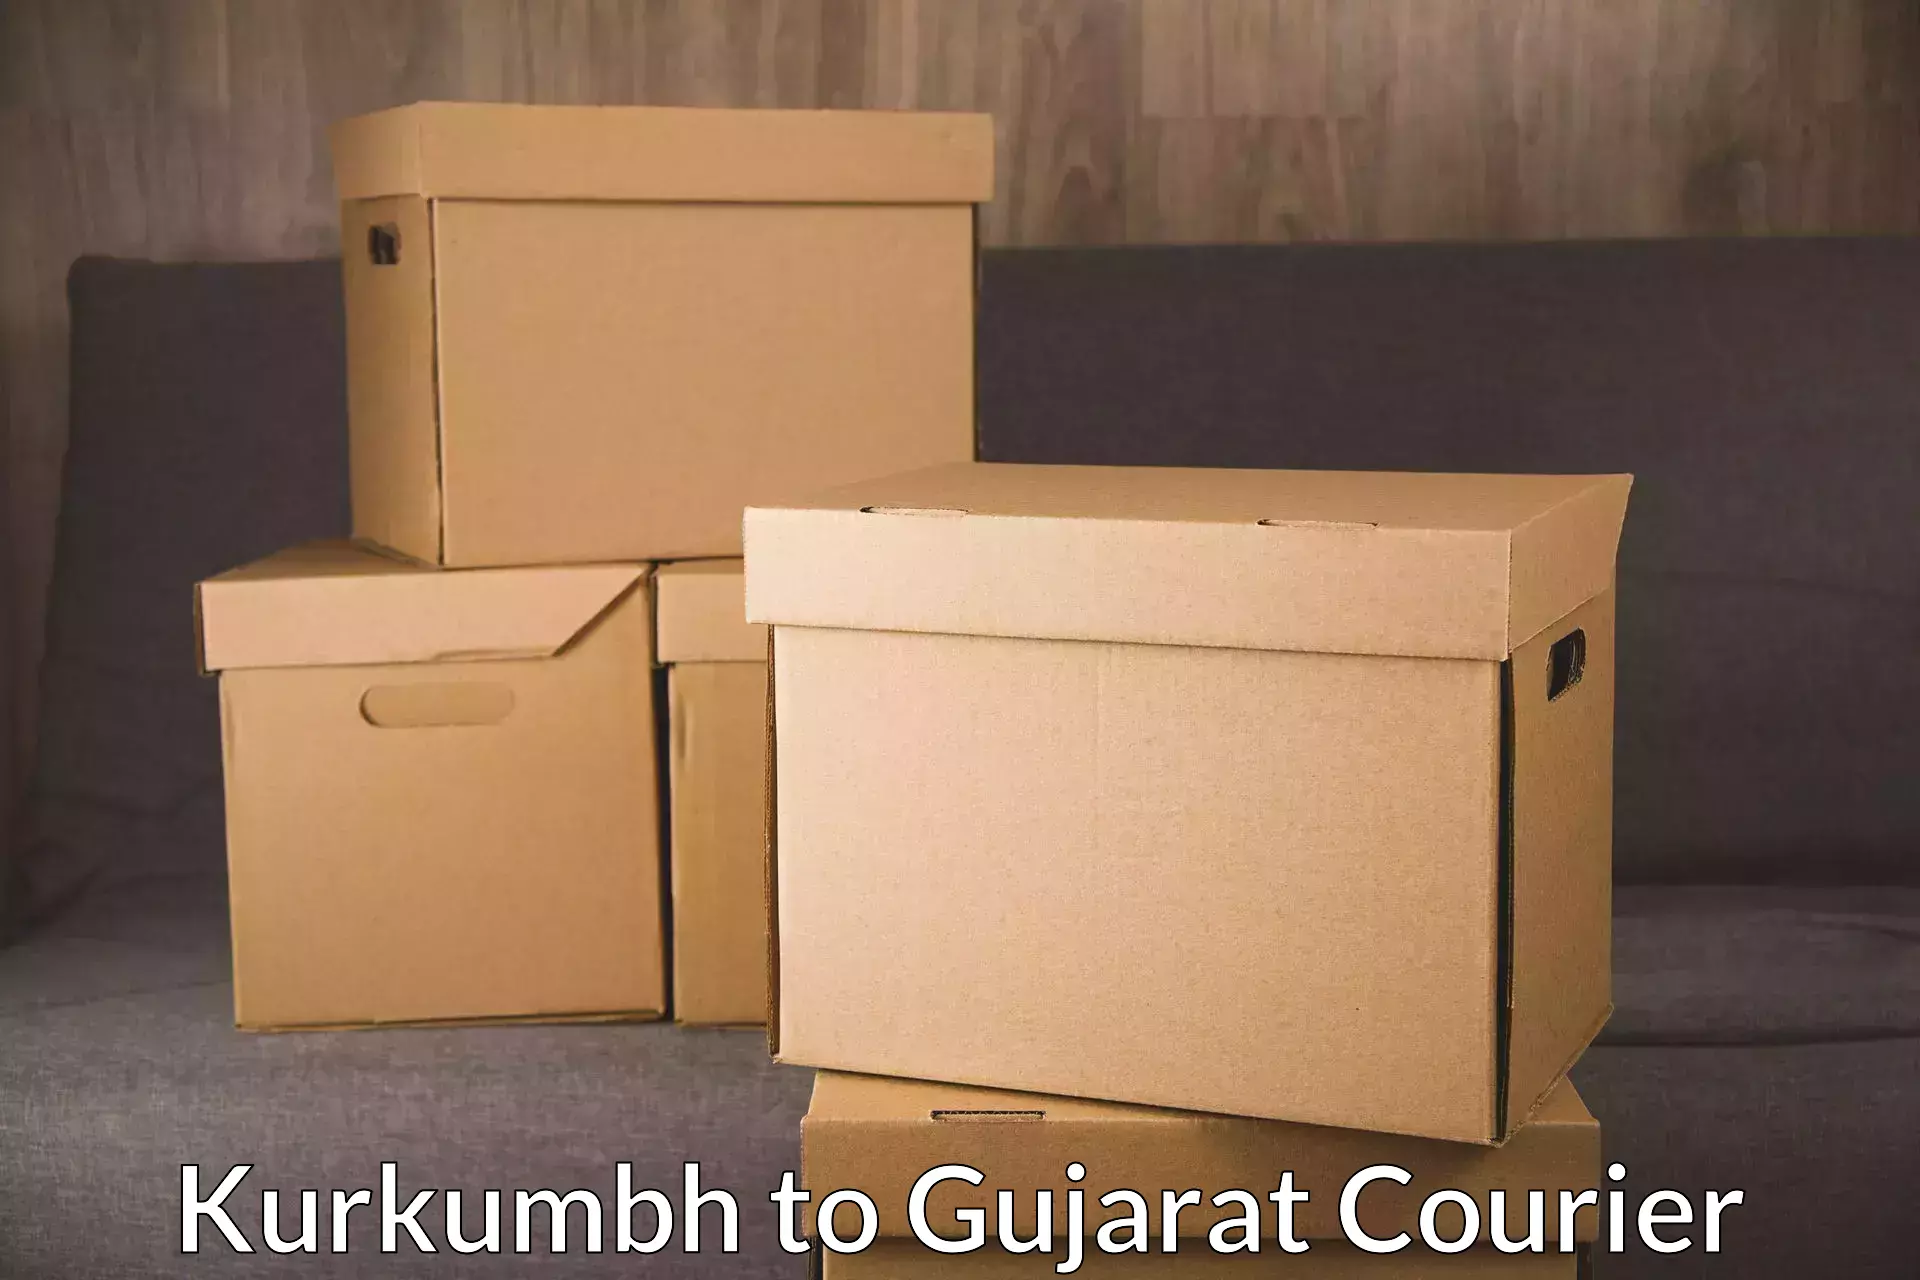 Global courier networks Kurkumbh to Tarapur